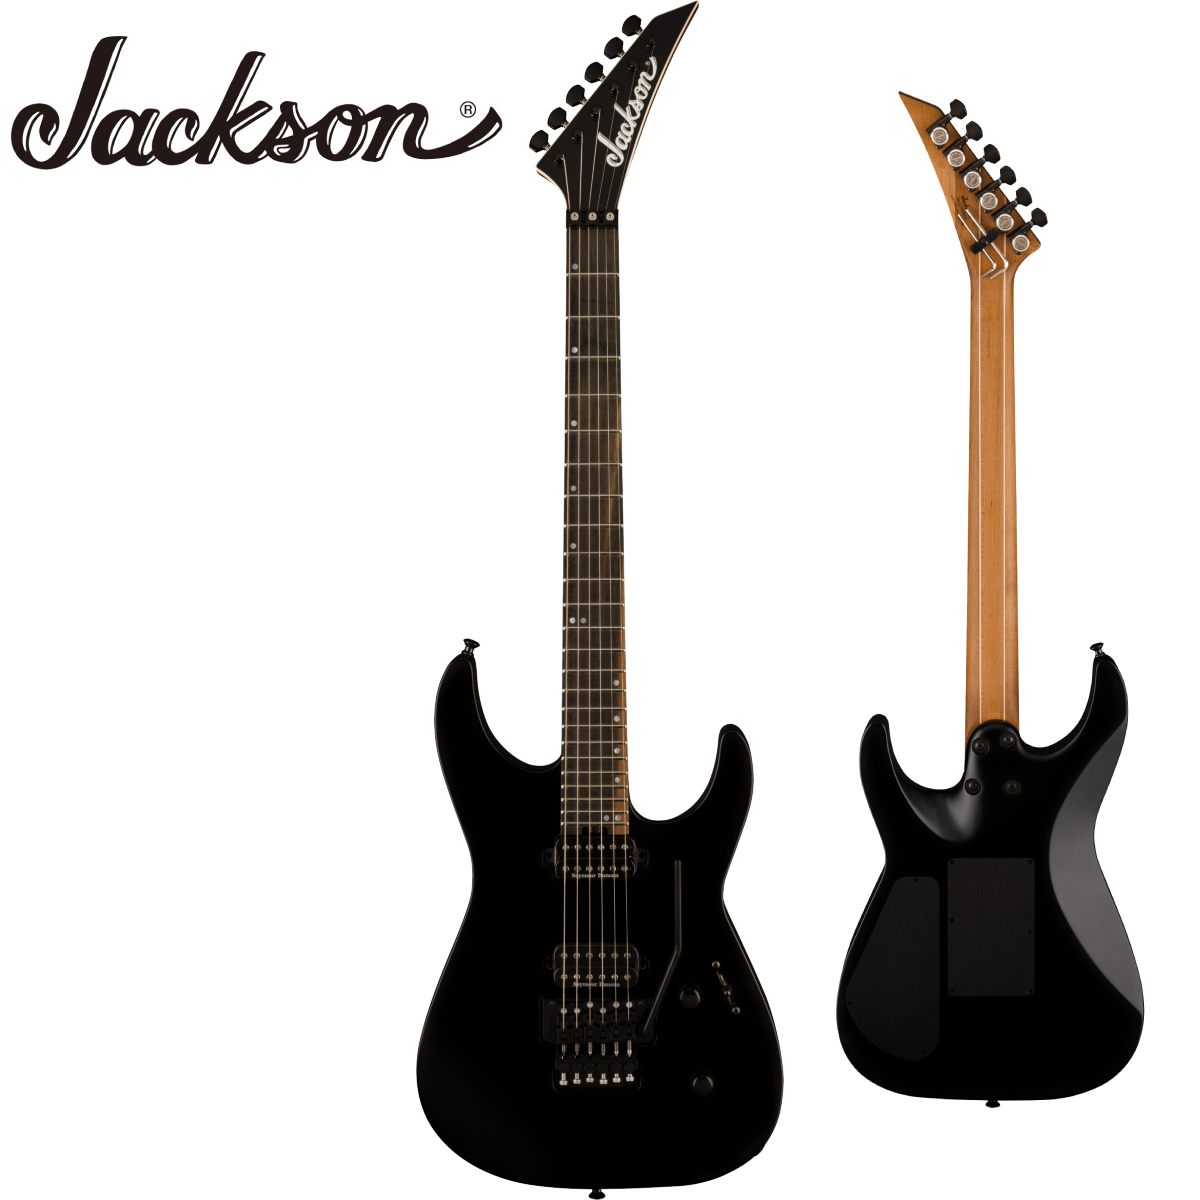 1980年に南カリフォルニアで生まれたJacksonブランドは、ハードロックやメタルの名手たちのニーズを取り入れた最初のブランドで、テクニカルでハイスピードな演奏に対応する機能を備えた楽器を提供し続けています。 Jacksonは、この40年間、ハイパフォーマンスギター＆ベースのジャンルに革命を起こし続け、業界を牽引するシュレッドマシンとしてメタル界を席巻してきました。Jackson American Seriesは、Jacksonの歴史的遺産における次の章の幕開けを象徴するシリーズで、ブランド初のMade in Corona, Californiaのフラッグシップ製品ラインとなります。 世界中のプレイヤーにインスピレーションを与えるように設計されたAmerican Series Virtuosoは、今日のハイスピードプレイヤーが求めるすべての基本機能を備えています。このモデルは、長時間にわたるプレイも快適にこなせるよう、アルダーボディに人間工学に基づいて設計された"ハンドシェイク"ヒールという新しい構造を採用しています。 5ピースのマルチラミネートキャラメライズドメイプル／メイプルネックは、24フレットまでしっかりとした安定性を提供するグラファイト補強ロッドを内蔵しボルトオンで固定されています。ロールドエッジ仕様の12〜16インチのコンパウンドラジアスのストリークエボニー指板は、ナット付近では丸みを帯び容易にコードやリフを弾くことができ、ネックポジションが上がるにつれてスピーディーなソロ弾きができるようデザインされています。Luminlayサイドドットは、暗いステージでも容易にフレットポジションを視認することができ、ヒールマウントのトラスロッド調整ホイールは、素早いネック調整を可能にします。 HH構成を採用し、ブリッジにSeymour Duncan JB TB-4ハムバッカーを搭載し、高出力でパワフルなローエンドを鳴らし切り、ネックにはSeymour Duncan '59 SH-1Nピックアップを搭載し、ガラスのようなハイエンドと抜けの良いミッドレンジで多ジャンルをカバーする多彩なトーンを生み出します。コントロールは、5ウェイスイッチングと、ボリュームとトーンのドームノブで構成されています。 さらに、Floyd Rose 1500 Series Double Lockingトレモロ、Gotoh MG-Tロッキングチューナー、Dunlop Dual Lockingストラップボタンなど、プレミアムな機能を搭載しており、大胆でアグレッシブな演奏にも対応できるような信頼できるチューニングを実現しています。 Jackson American Series Virtuosoは、Mystic Blue、Satin Black、Satin Shell Pink、Specific Oceanの4色展開で、マッチングバウンドポインティヘッド、ブラックハードウェアを備えています。 【Specification】 ヘッドストック：Jackson Pointed 6-In-Line ヘッドストックバインディング ネック：5-Piece Caramelized Maple/Maple/Caramelized Maple/Maple/Caramelized Maple ネックフィニッシュ：Hand-Rubbed Satin Urethane ネック：Bolt-On with Graphite Reinforcement ネックの太さ：.755@3rd - .815@12th フィンガーボードラジアス：12"-16" Compound Radius (304.8 mm to 406.4 mm) フィンガーボードの素材：Streaked Ebony ポジションインレイ：Mother of Pearl Offset Dot サイドドット フレット数：24 トラスロッド：Dual-Action with Wheel トラスロッドナット：Heel-Mount Truss Rod Adjustment Wheel ナット：Floyd Rose 1500 Series Locking ナット幅：1.6875" (42.86 mm) ナットの素材：Floyd Rose 1500 Series Locking ボディ：Alder ボディフィニッシュ：Satin ボディシェイプ：Virtuoso ボディ素材：Alder ブリッジ：Floyd Rose 1500 Series Double-Locking Tremolo ピックアップカバー：Black コントロールノブ：Dome-Style SWITCH TIP：Black ハードウェアフィニッシュ：Black チューニングマシーン：Gotoh MG-T Locking ストリング：Nickel Plated Steel (.009-.042 Gauges) トレモロアーム：Floyd Rose 1500 Series Locking ストラップボタン：Dunlop Dual-Locking ブリッジピックアップ：Seymour Duncan JB TB-4 Direct Mount ネックピックアップ：Seymour Duncan '59 SH-1N Direct-Mount ピックアップコンフィギュレーション：HH コントロール：Volume, Tone スウィッチ：5-Position Blade: Position 1. Bridge, Position 2. Bridge Outer Coil and Neck Inner Coil, Position 3. Bridge and Neck, Position 4. Bridge Inner Coil and Neck Outer Coil, Position 5. Neck 付属品：正規保証書,セミハードケース /_/_/_/♪出荷前調整のご要望承ります♪_/_/_/_/ ギタープラネットではご注文頂いた商品は 新品中古問わず検品・調整してから出荷致します。 弦高などの細かなセッティング等、お好みに 合わせての調整も可能ですので、お気兼ねなく お申し付けくださいませ。 /_/_/_/_/_/_/_/_/_/_/_/_/_/_/_/_/_/_/_/_/_/_ お問い合わせ:03-3259-0031